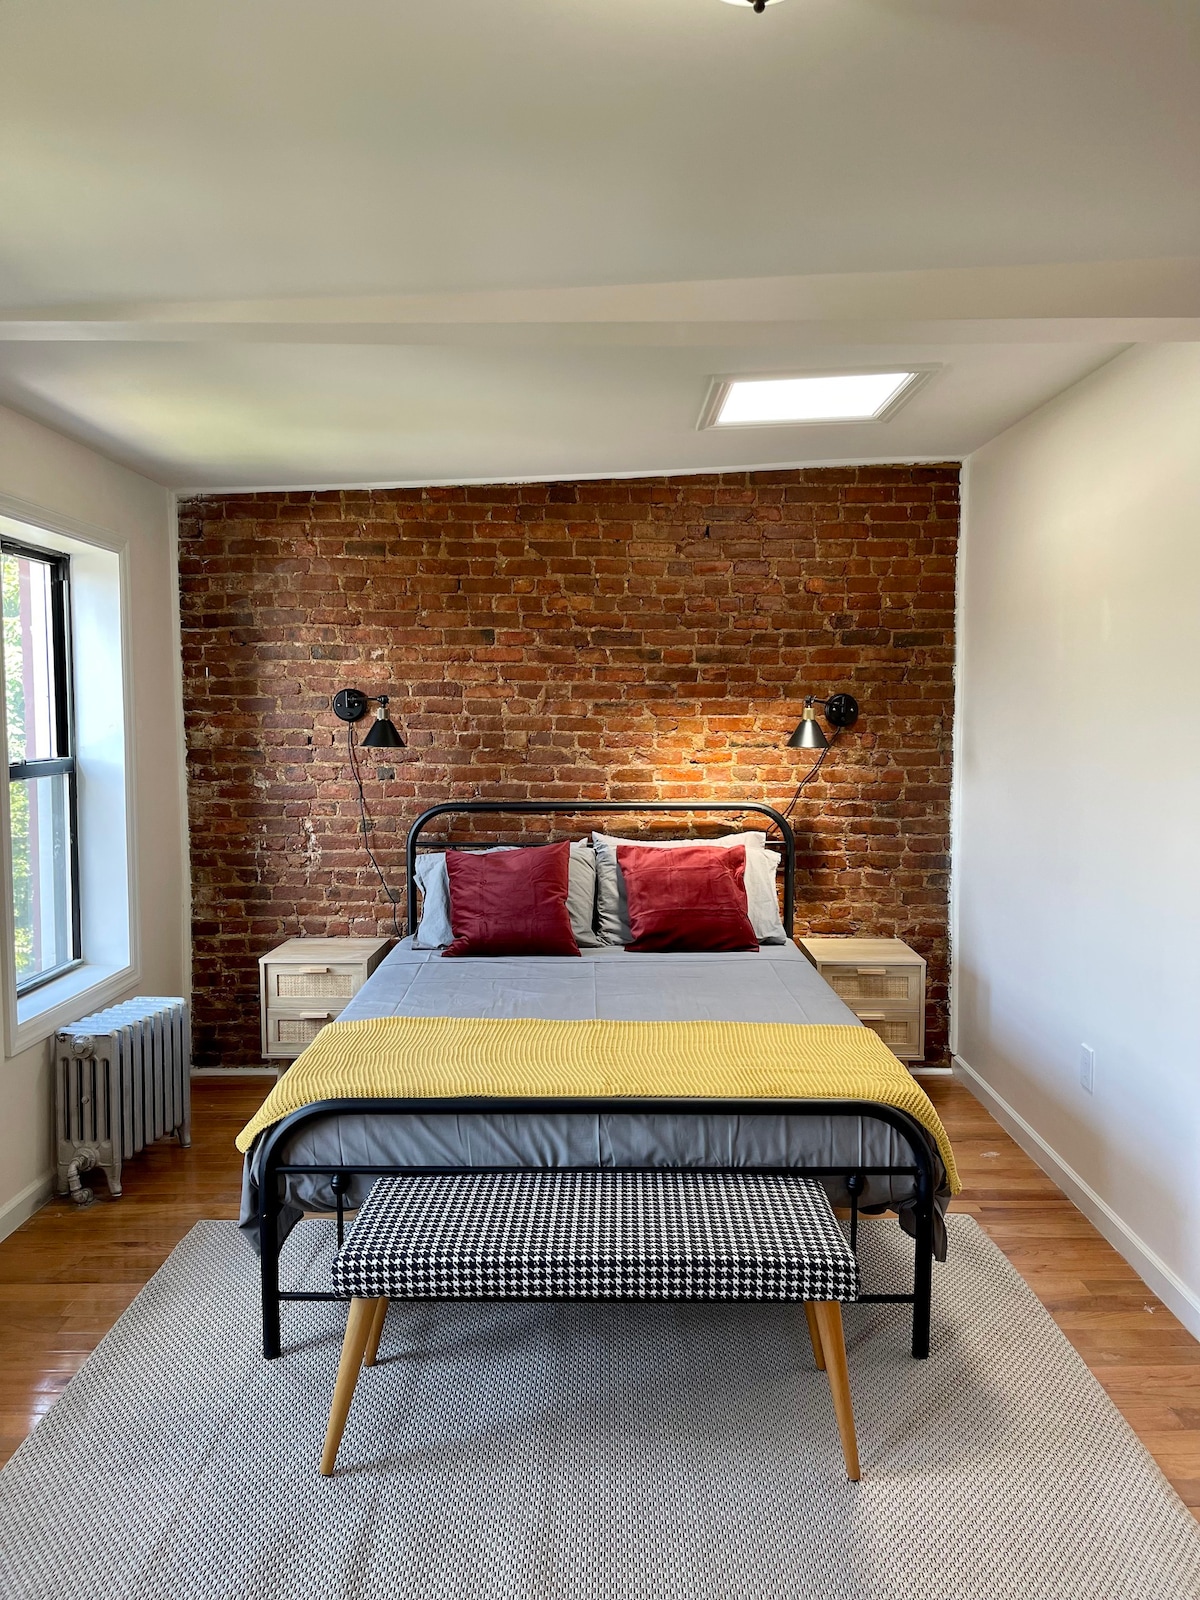 Crown Heights, Brooklyn Vacation Rentals & Homes - Brooklyn, Brooklyn, NY |  Airbnb